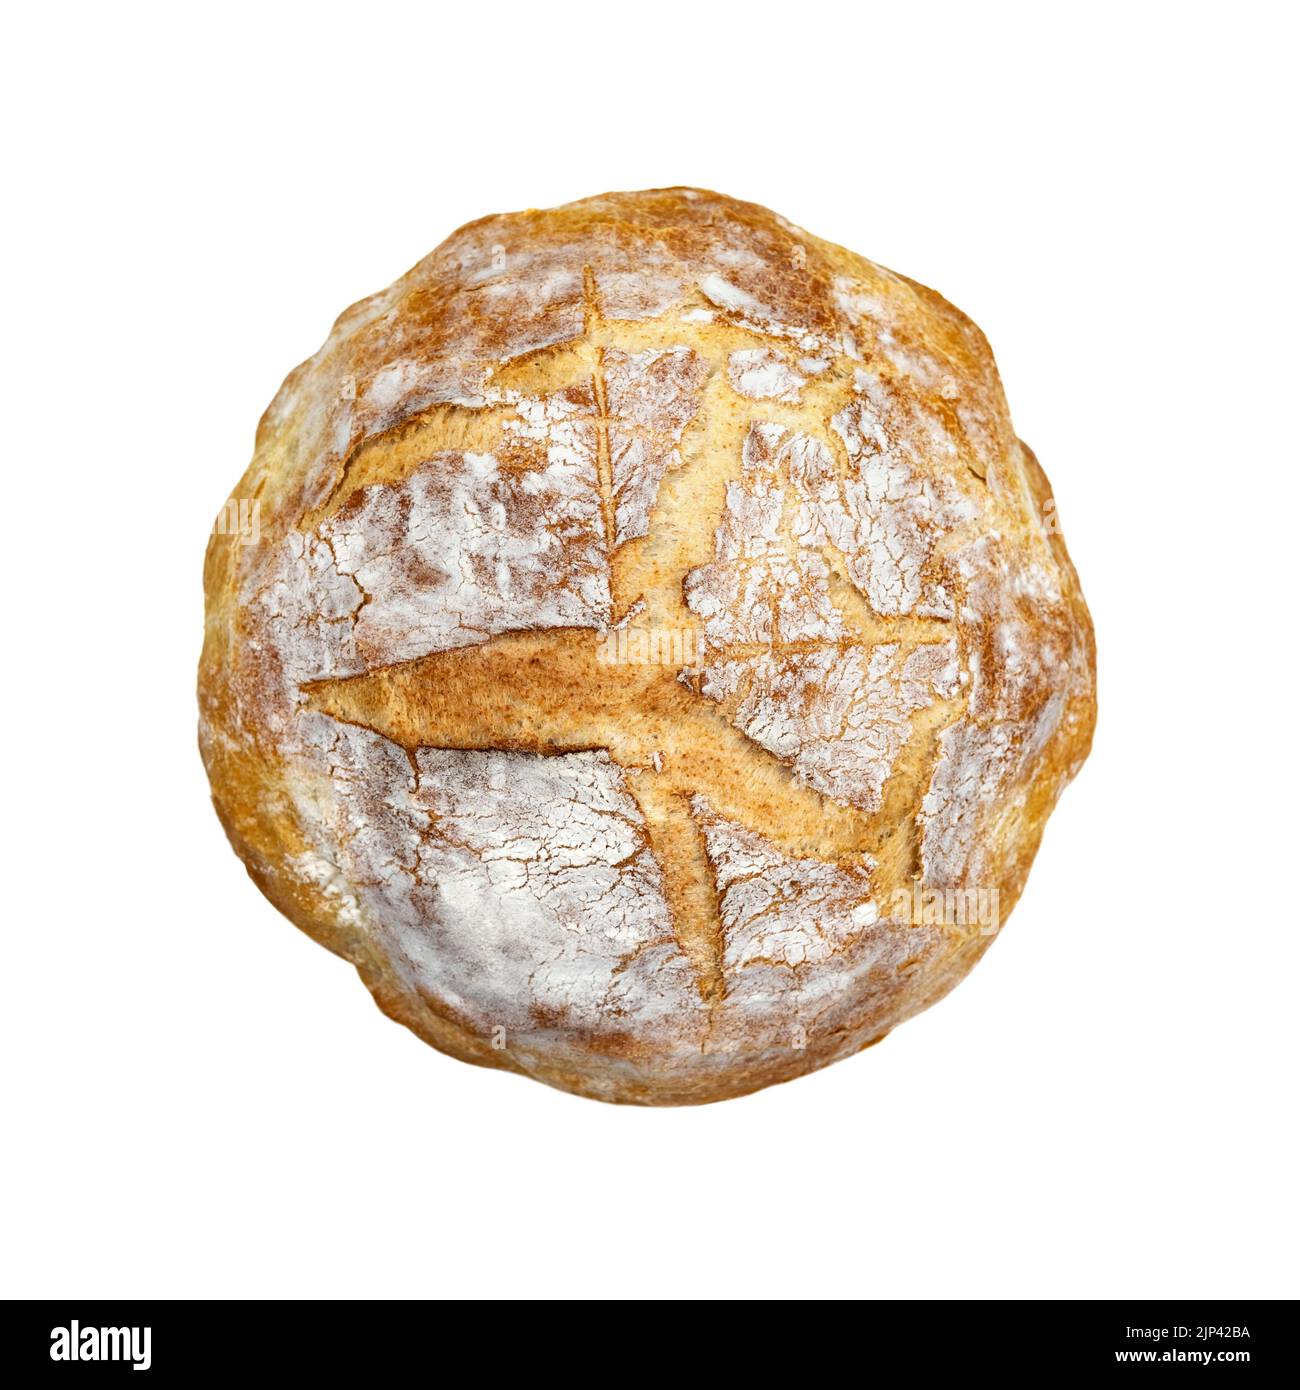 Tradizionale pane lievitato a pasta madre isolato su sfondo bianco. Fotografia di cibo sano Foto Stock